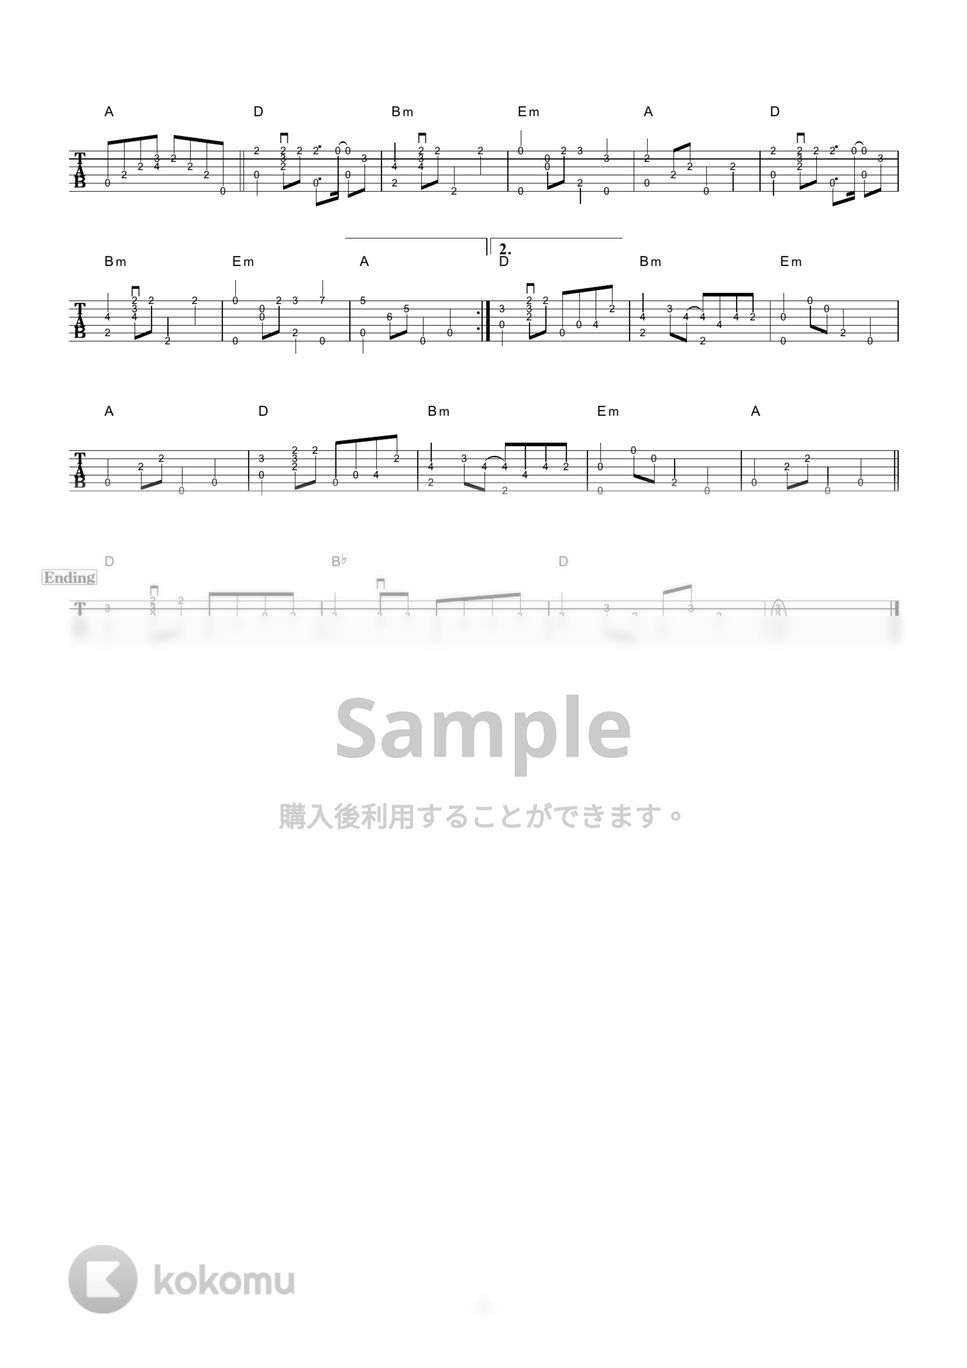 ザ・ワイルドワンズ - 想い出の渚 (ギター伴奏/イントロ・間奏ソロギター) by 伴奏屋TAB譜